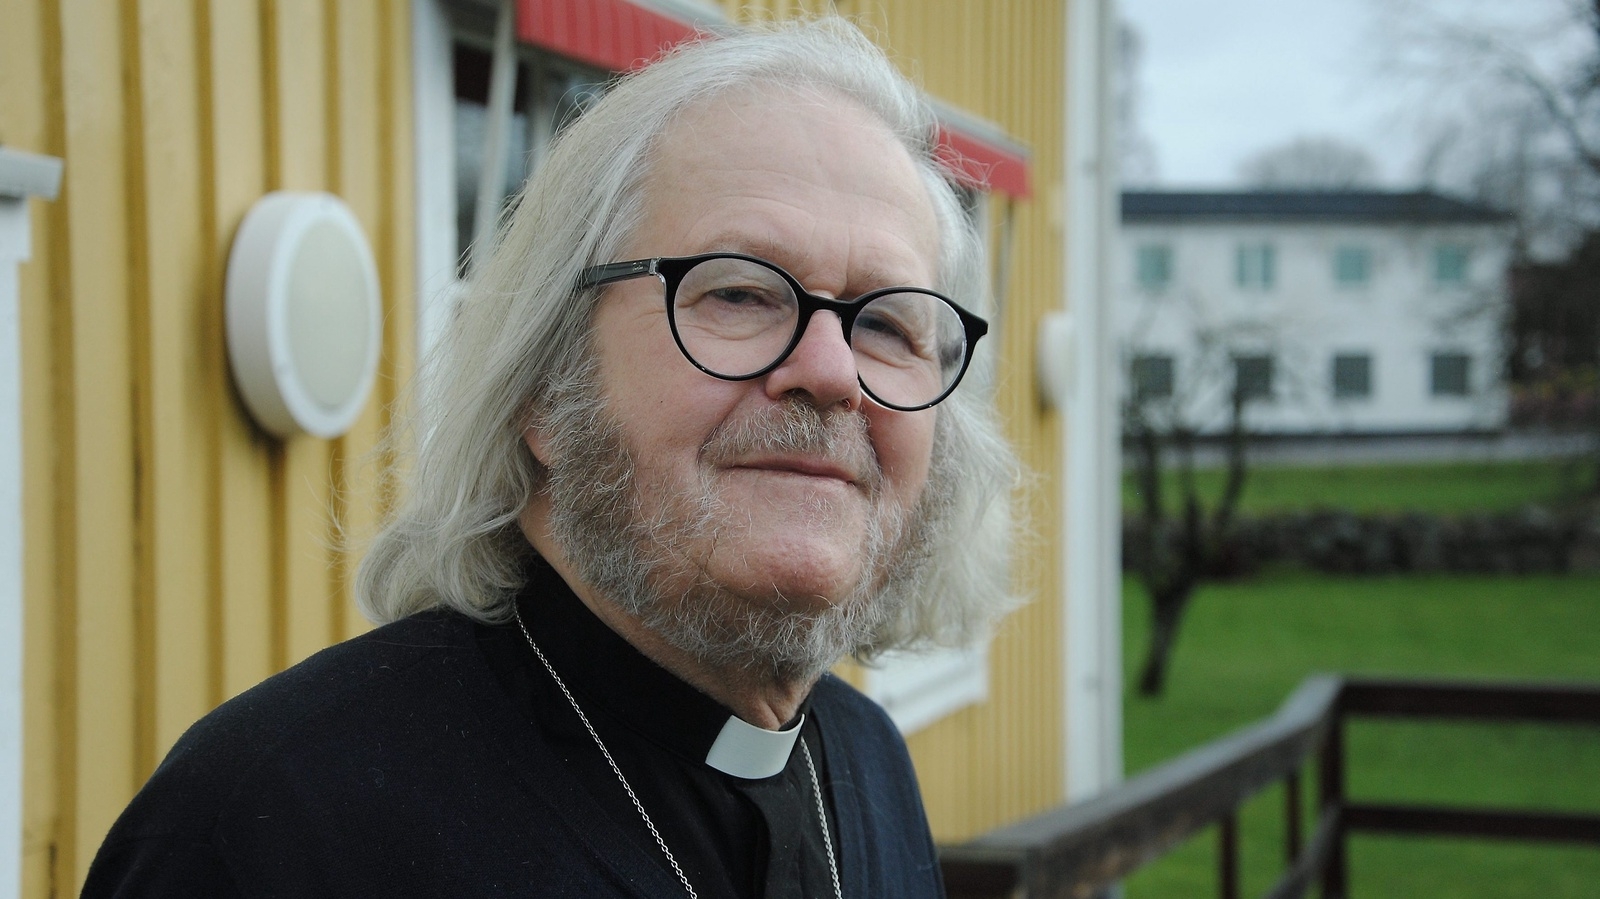 Staffan Örneskans fyllter 85 år idag och firar med öppet hus i Bjärnums prästgår. FOTO: CARL-JOHAN BAULER